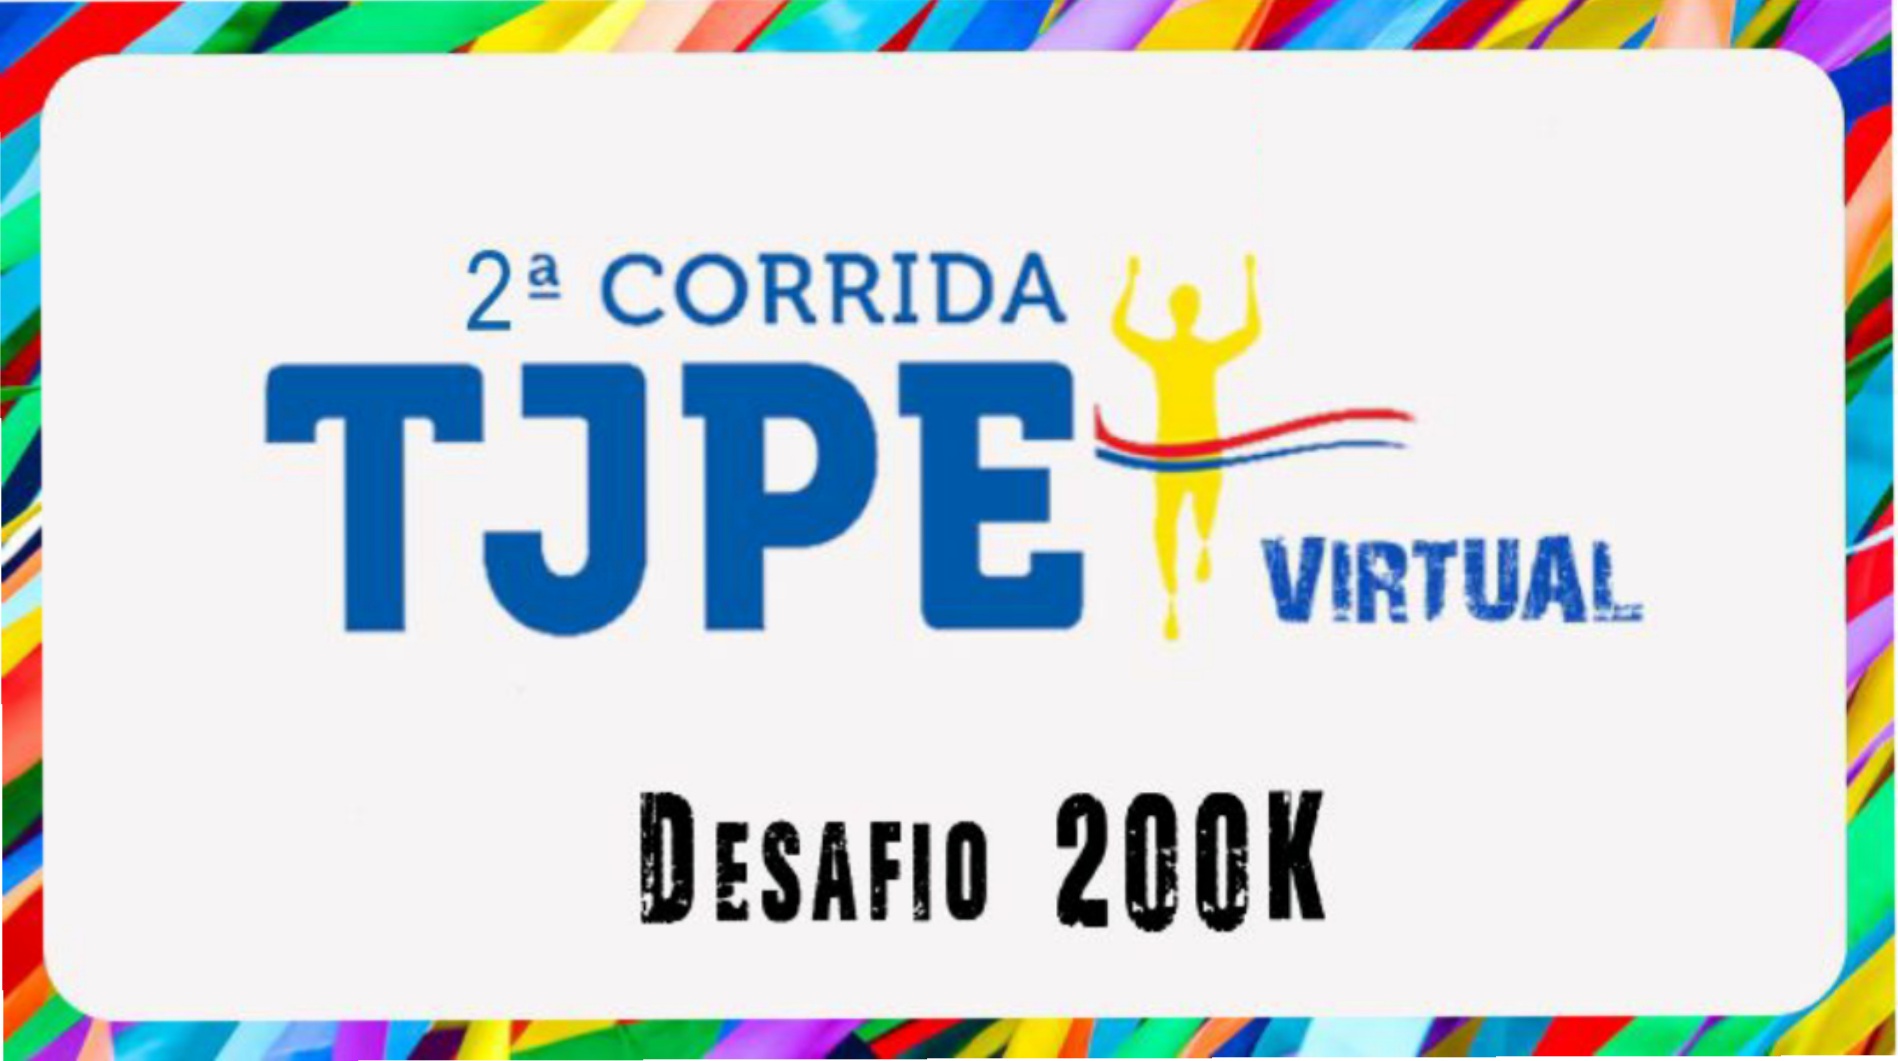 Imagem com 2ª Corrida TJPE virtual, desafio 200 k escrito e a figura de uma pessoa correndo